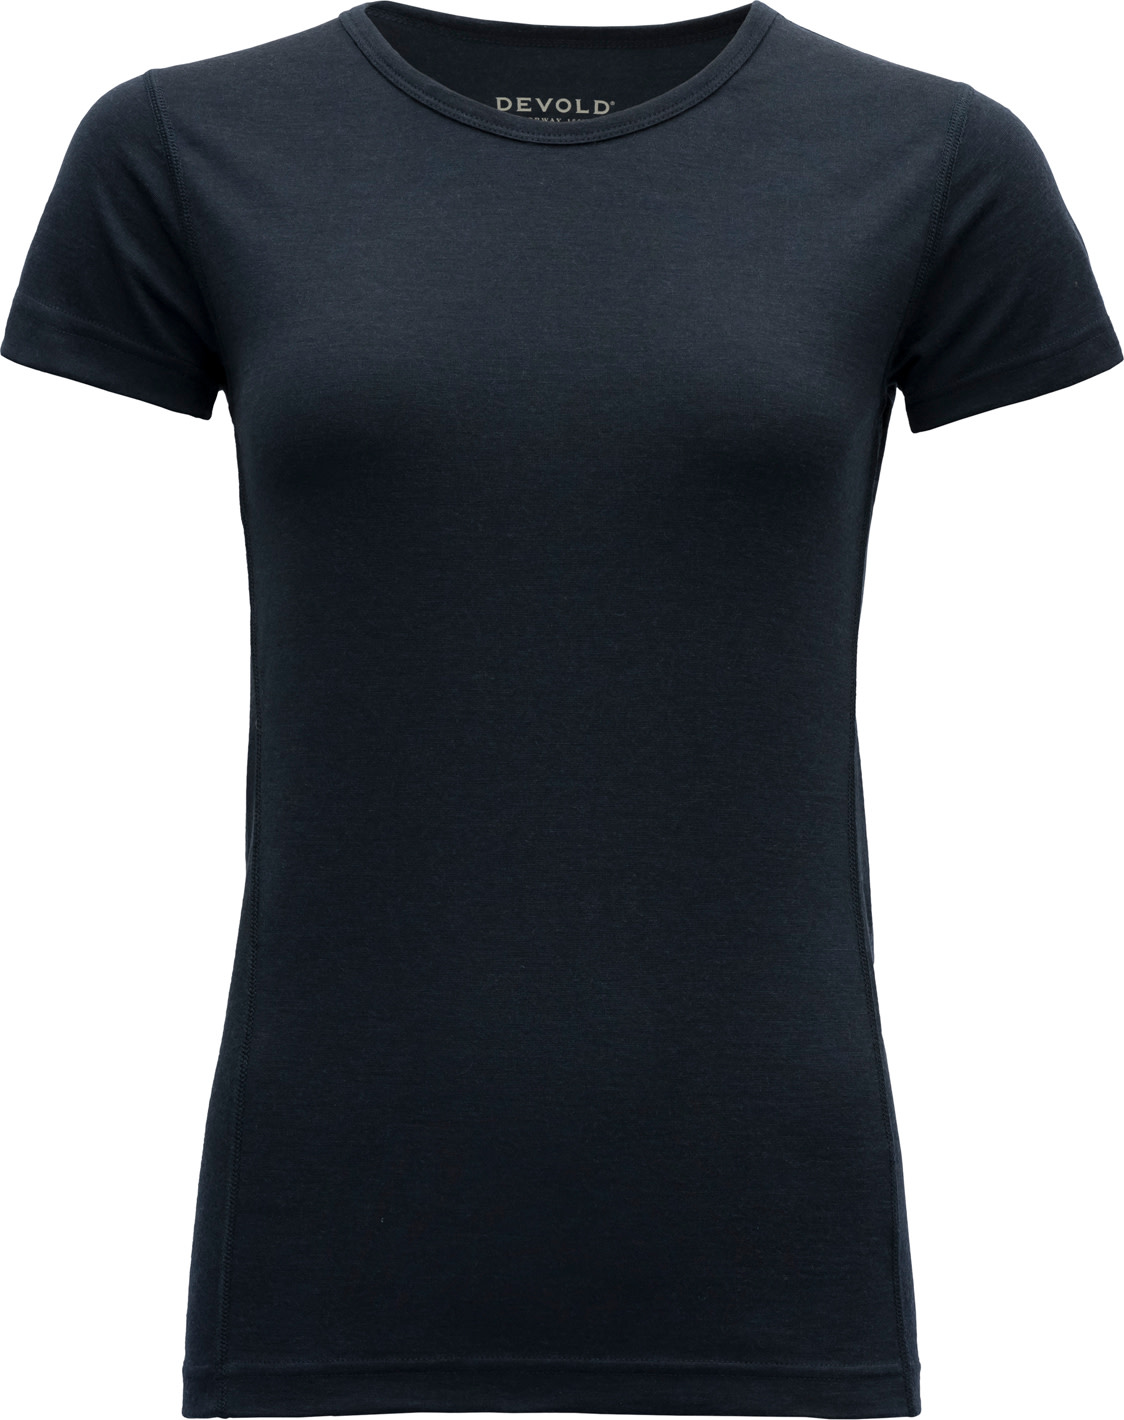 Devold Women’s Breeze Merino 150 T-Shirt INK